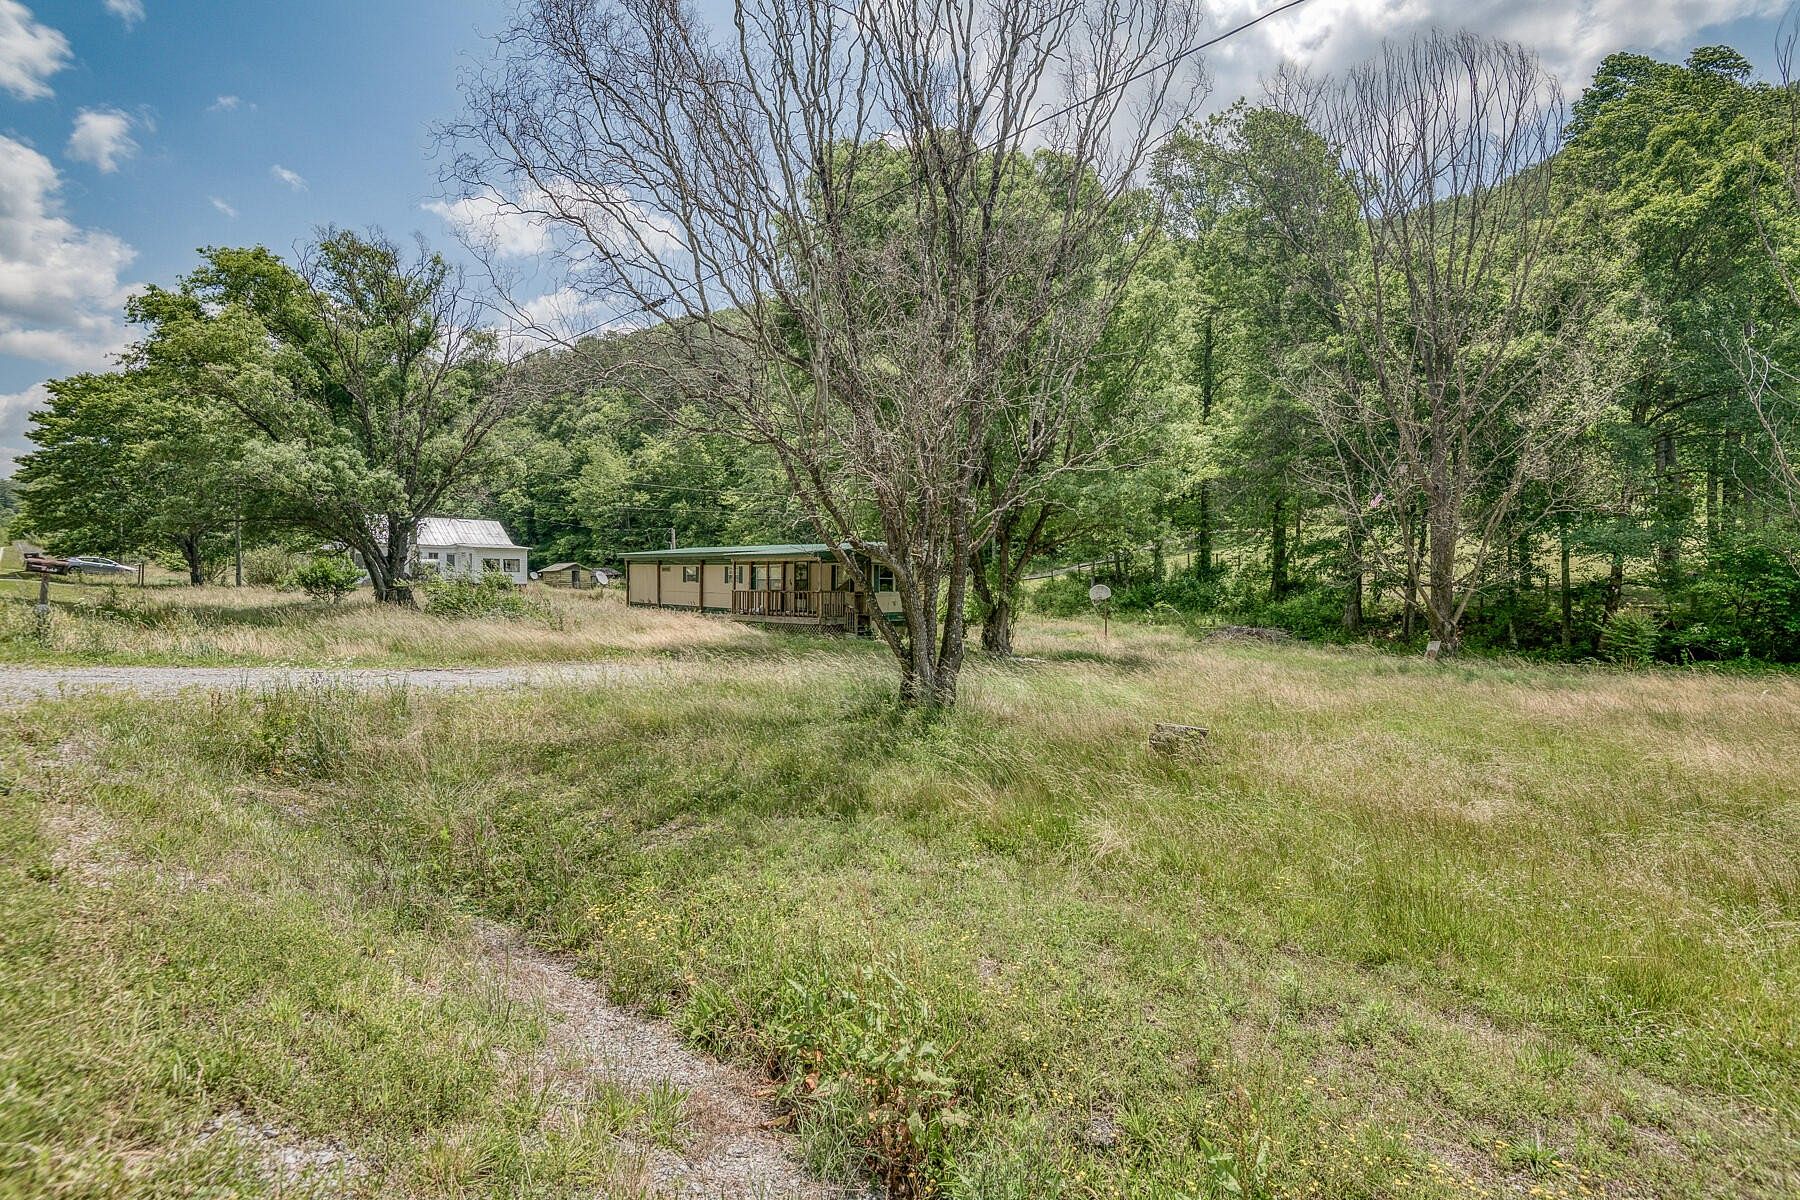 24 Acres of Land for Sale in Mendota, Virginia